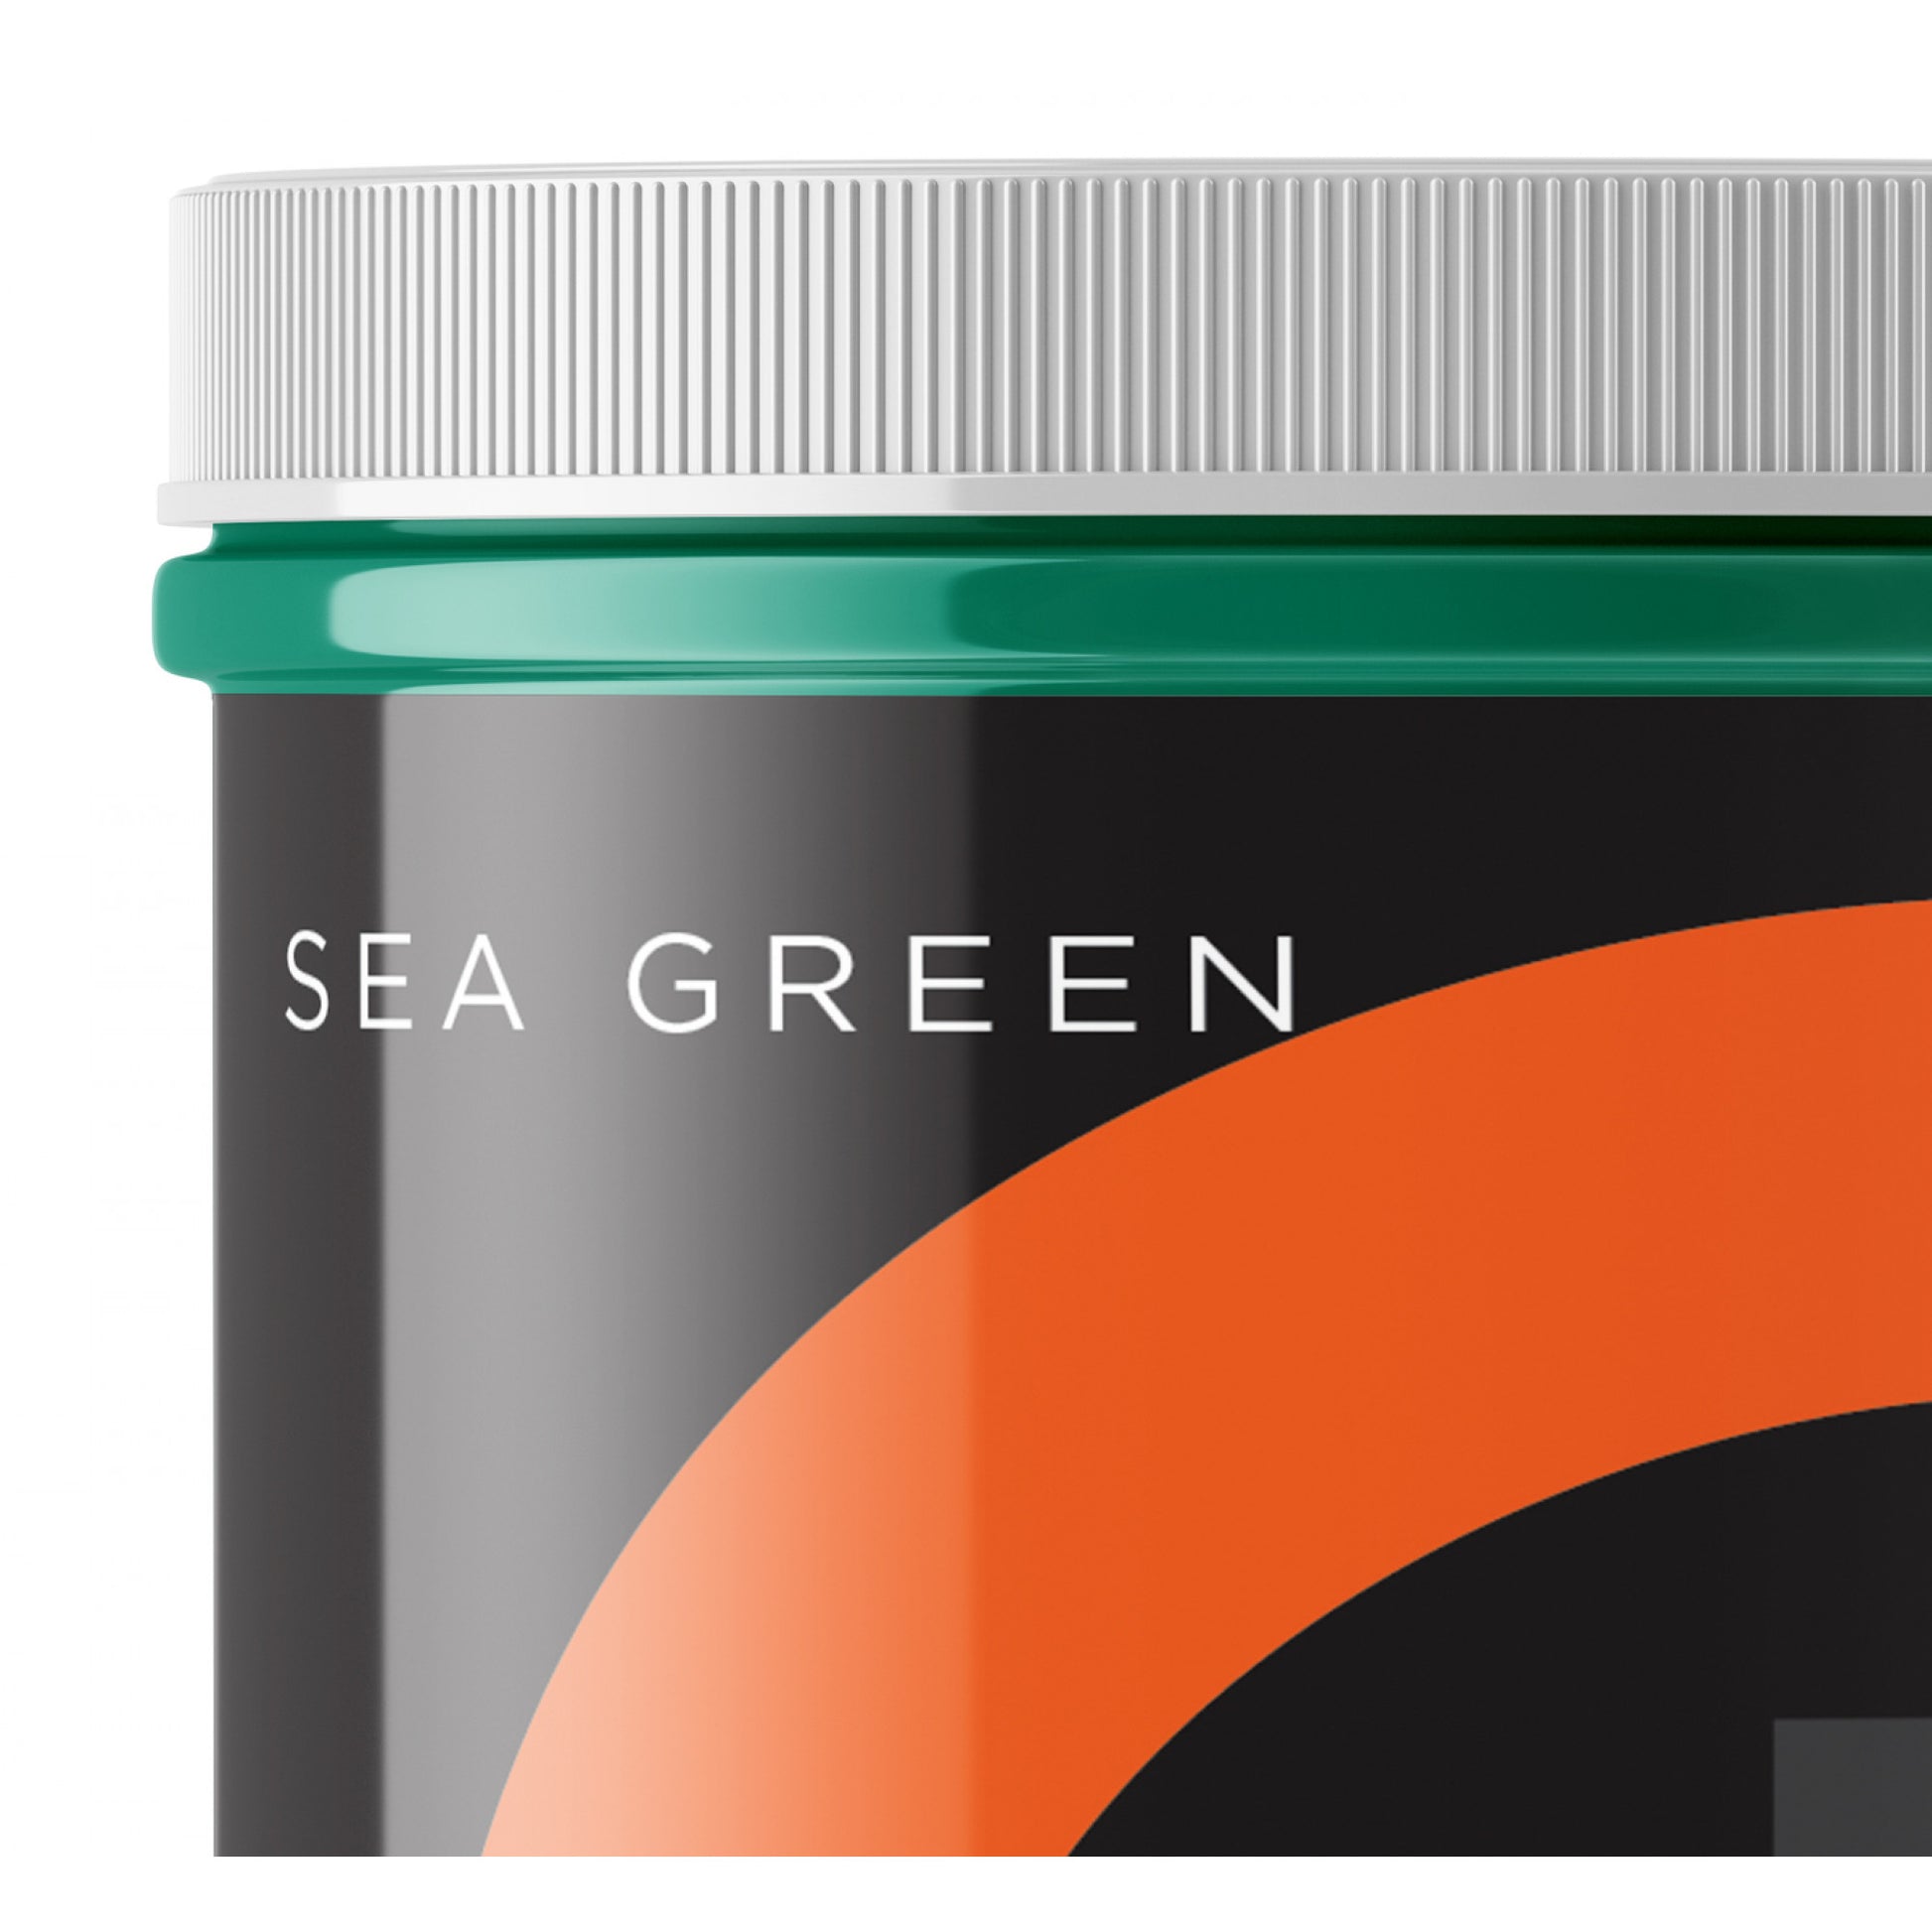 Ocean-Inspired Beauty: Sea Green Metallic Pigment for Designer Metallic Epoxy